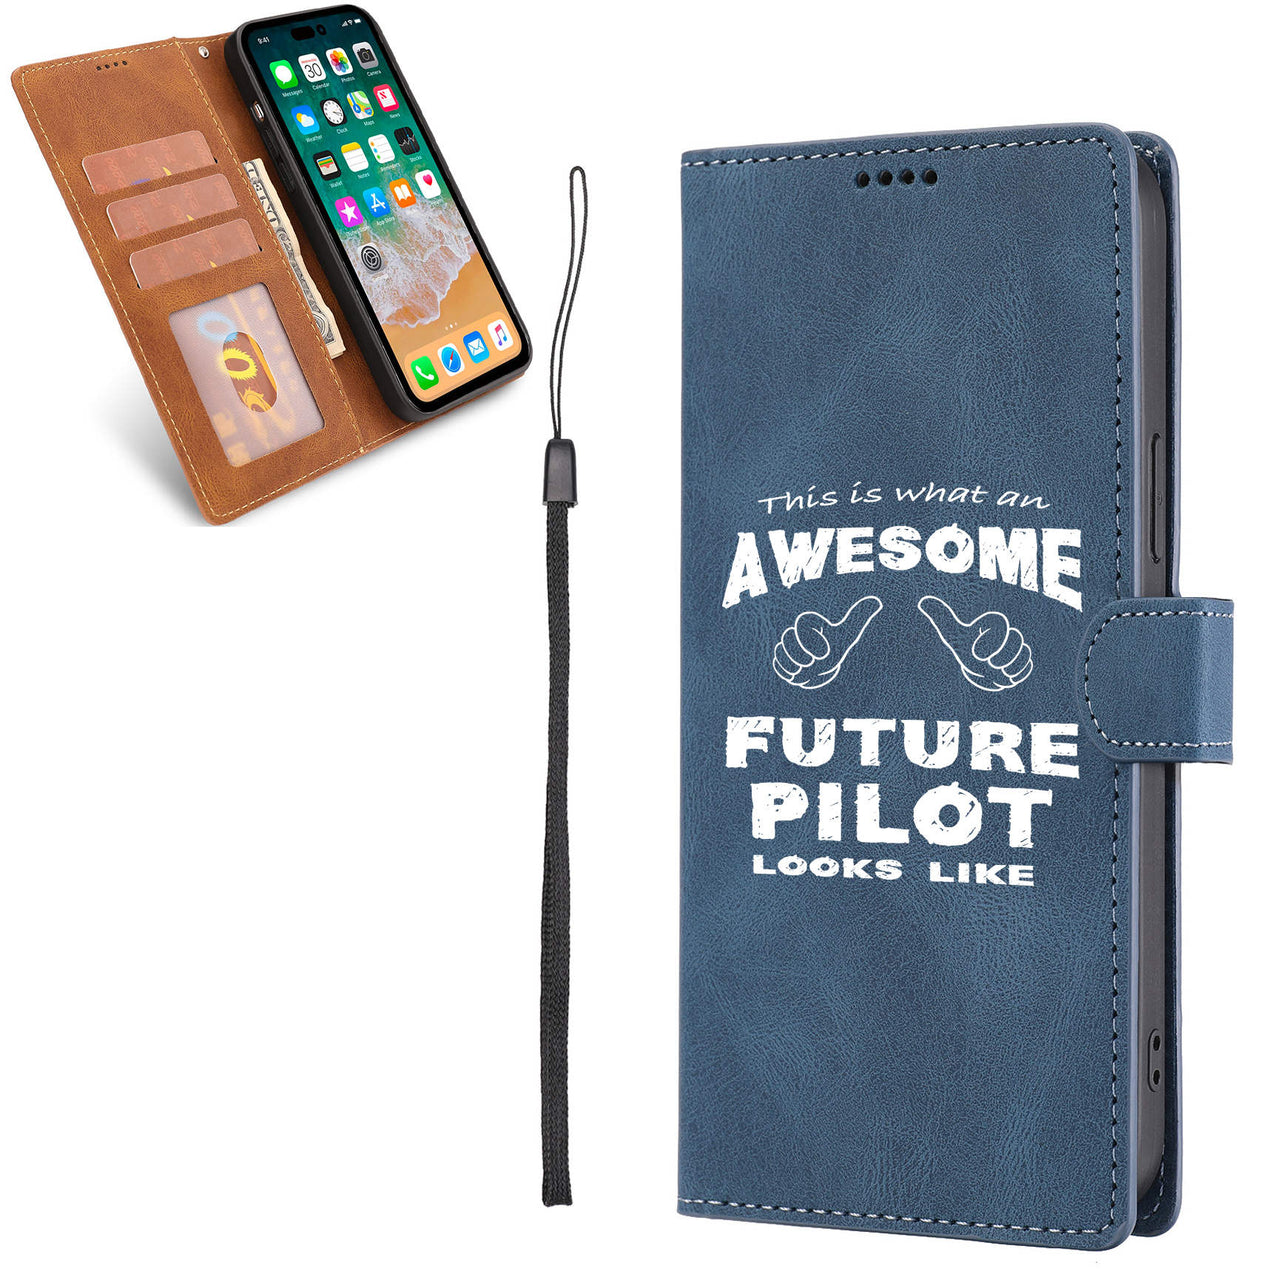 Future Pilot Designed Leather iPhone Cases